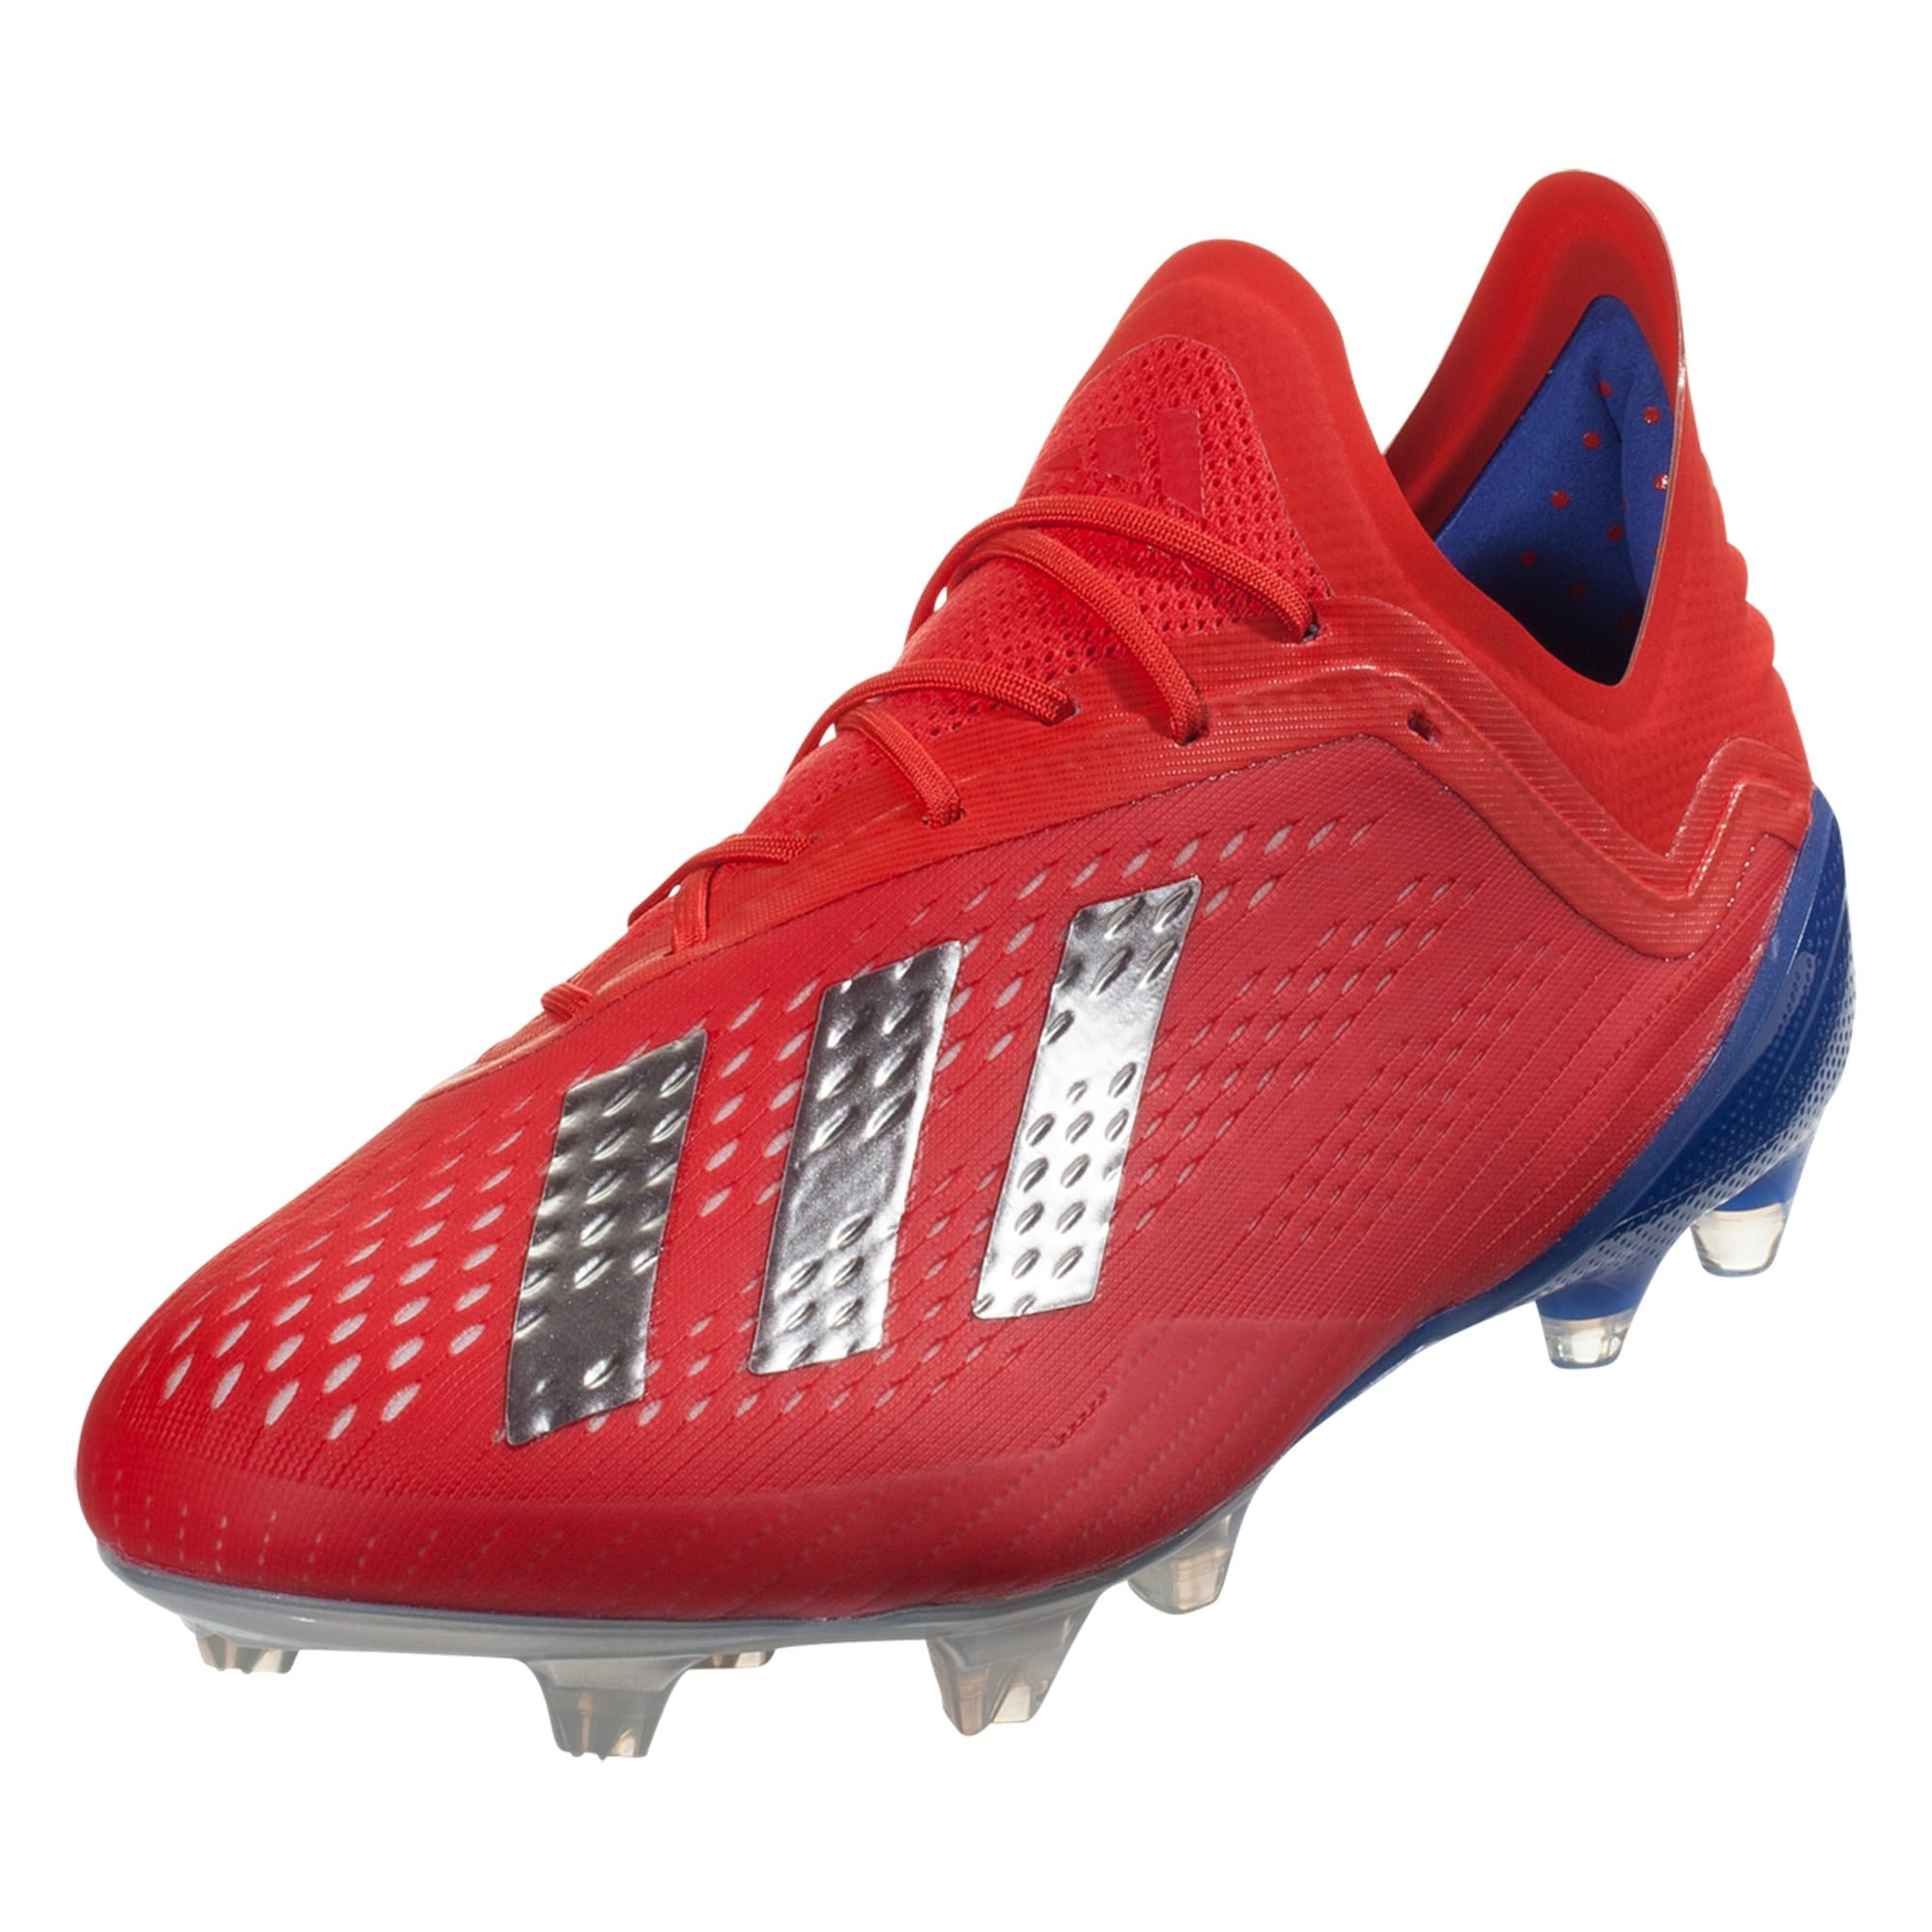 Adidas X 18.3 FG - Red/Silver/Blue | Futbolista World | Cayman Islands  Football Store